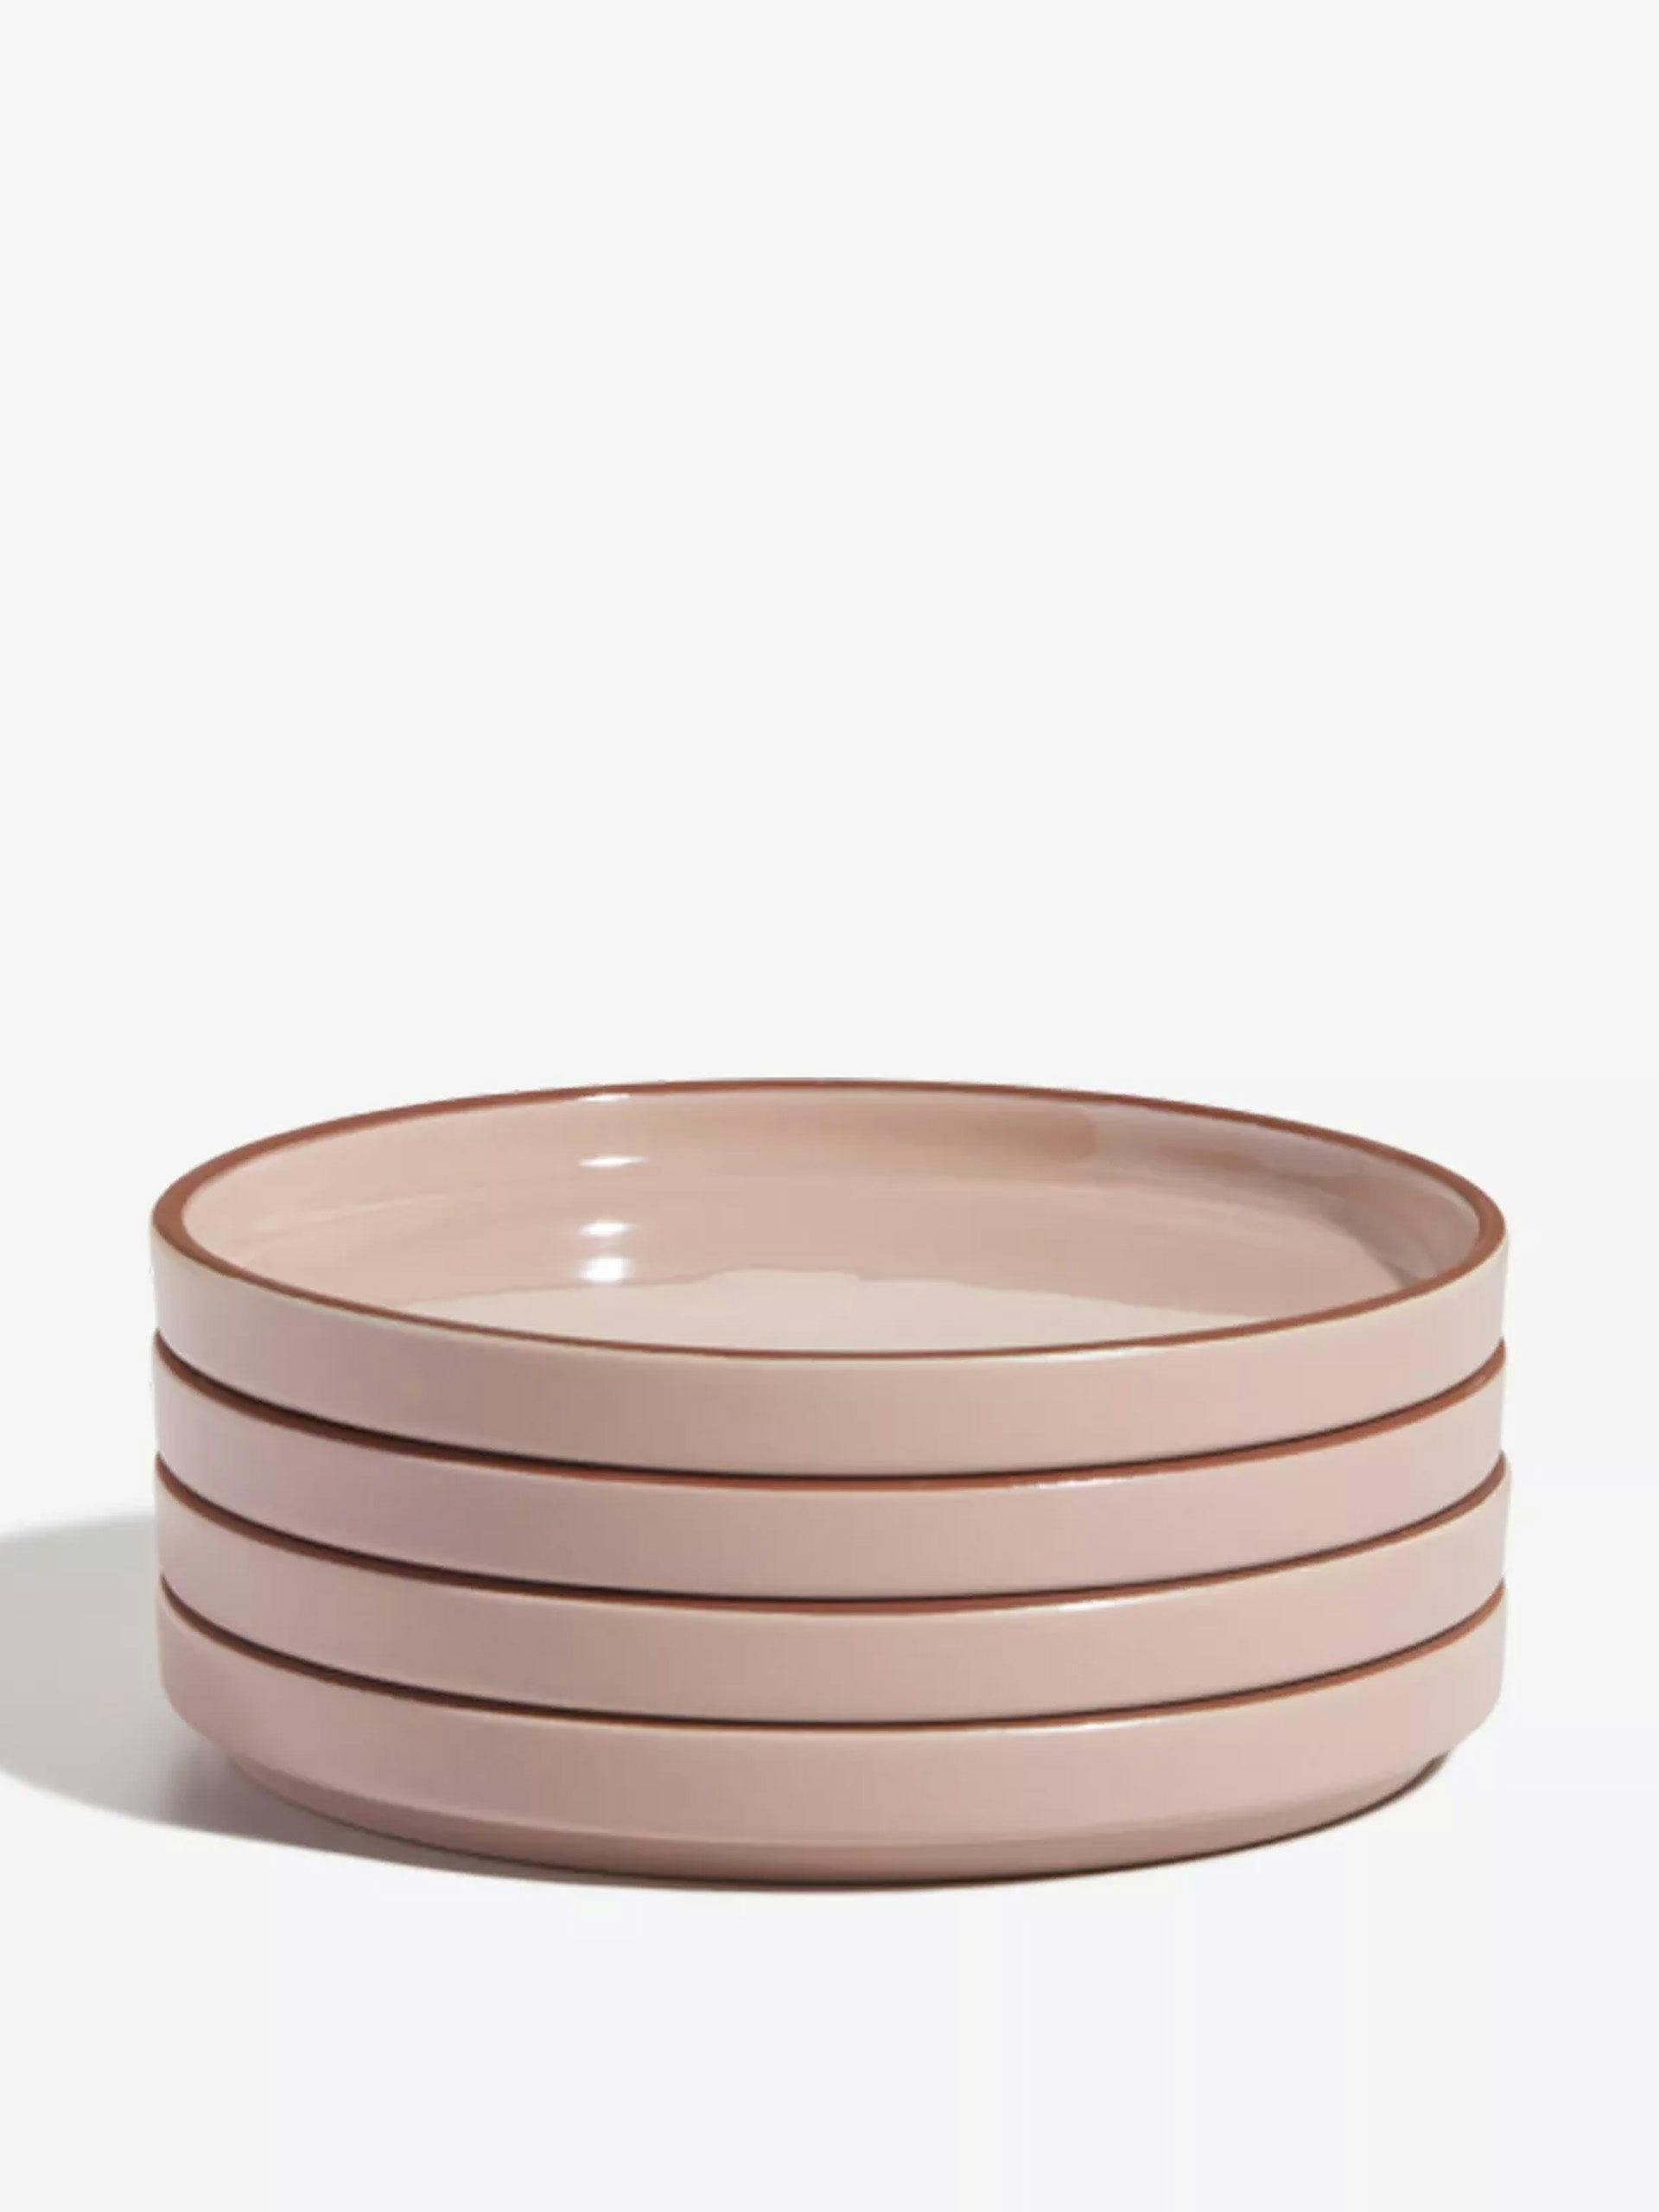 Demi ceramic plates (set of 4)